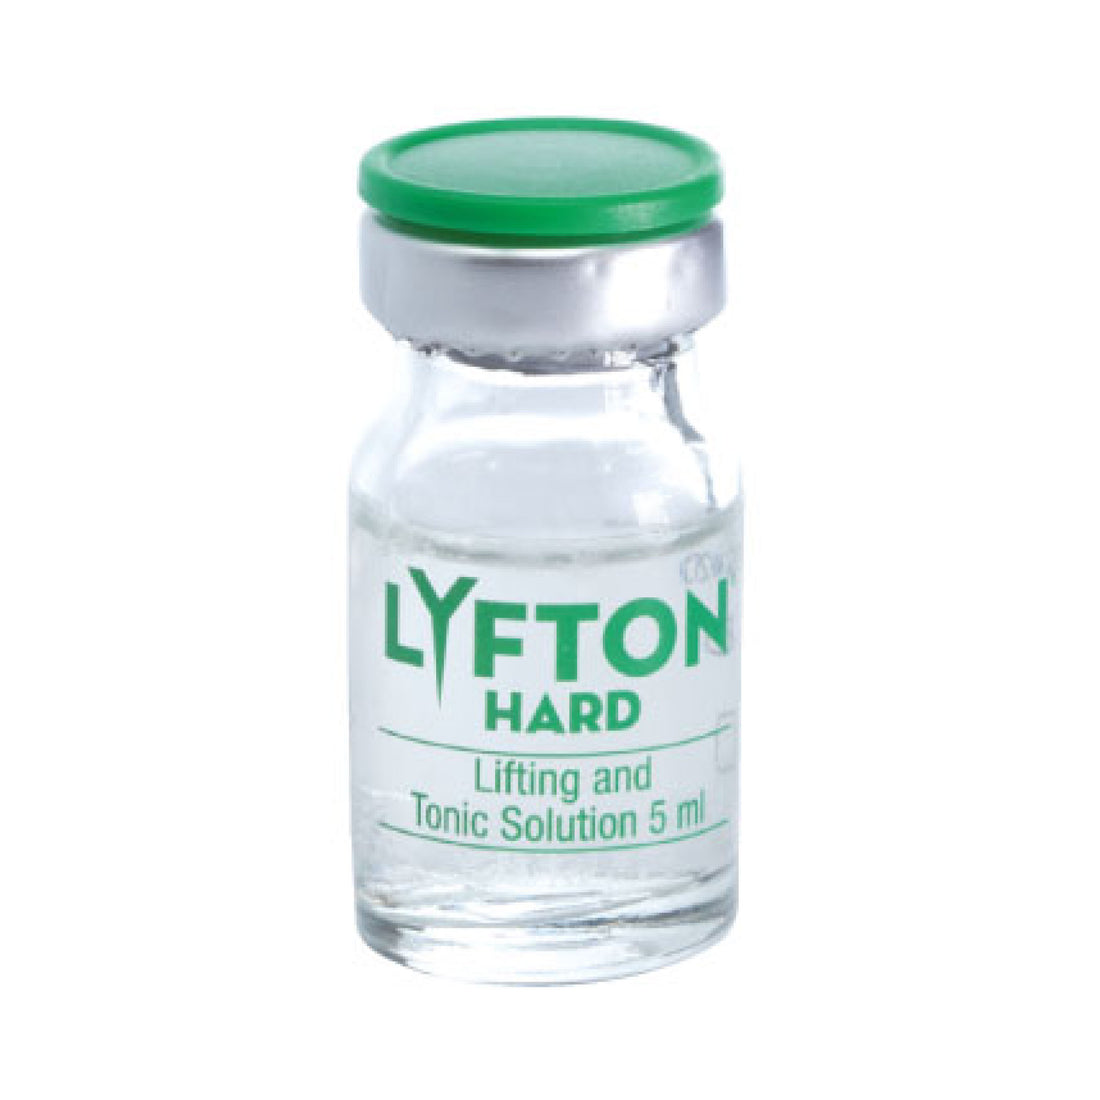 LYFTON HARD - Soluzione Lifting e Tonicità - Aerazen Lab.